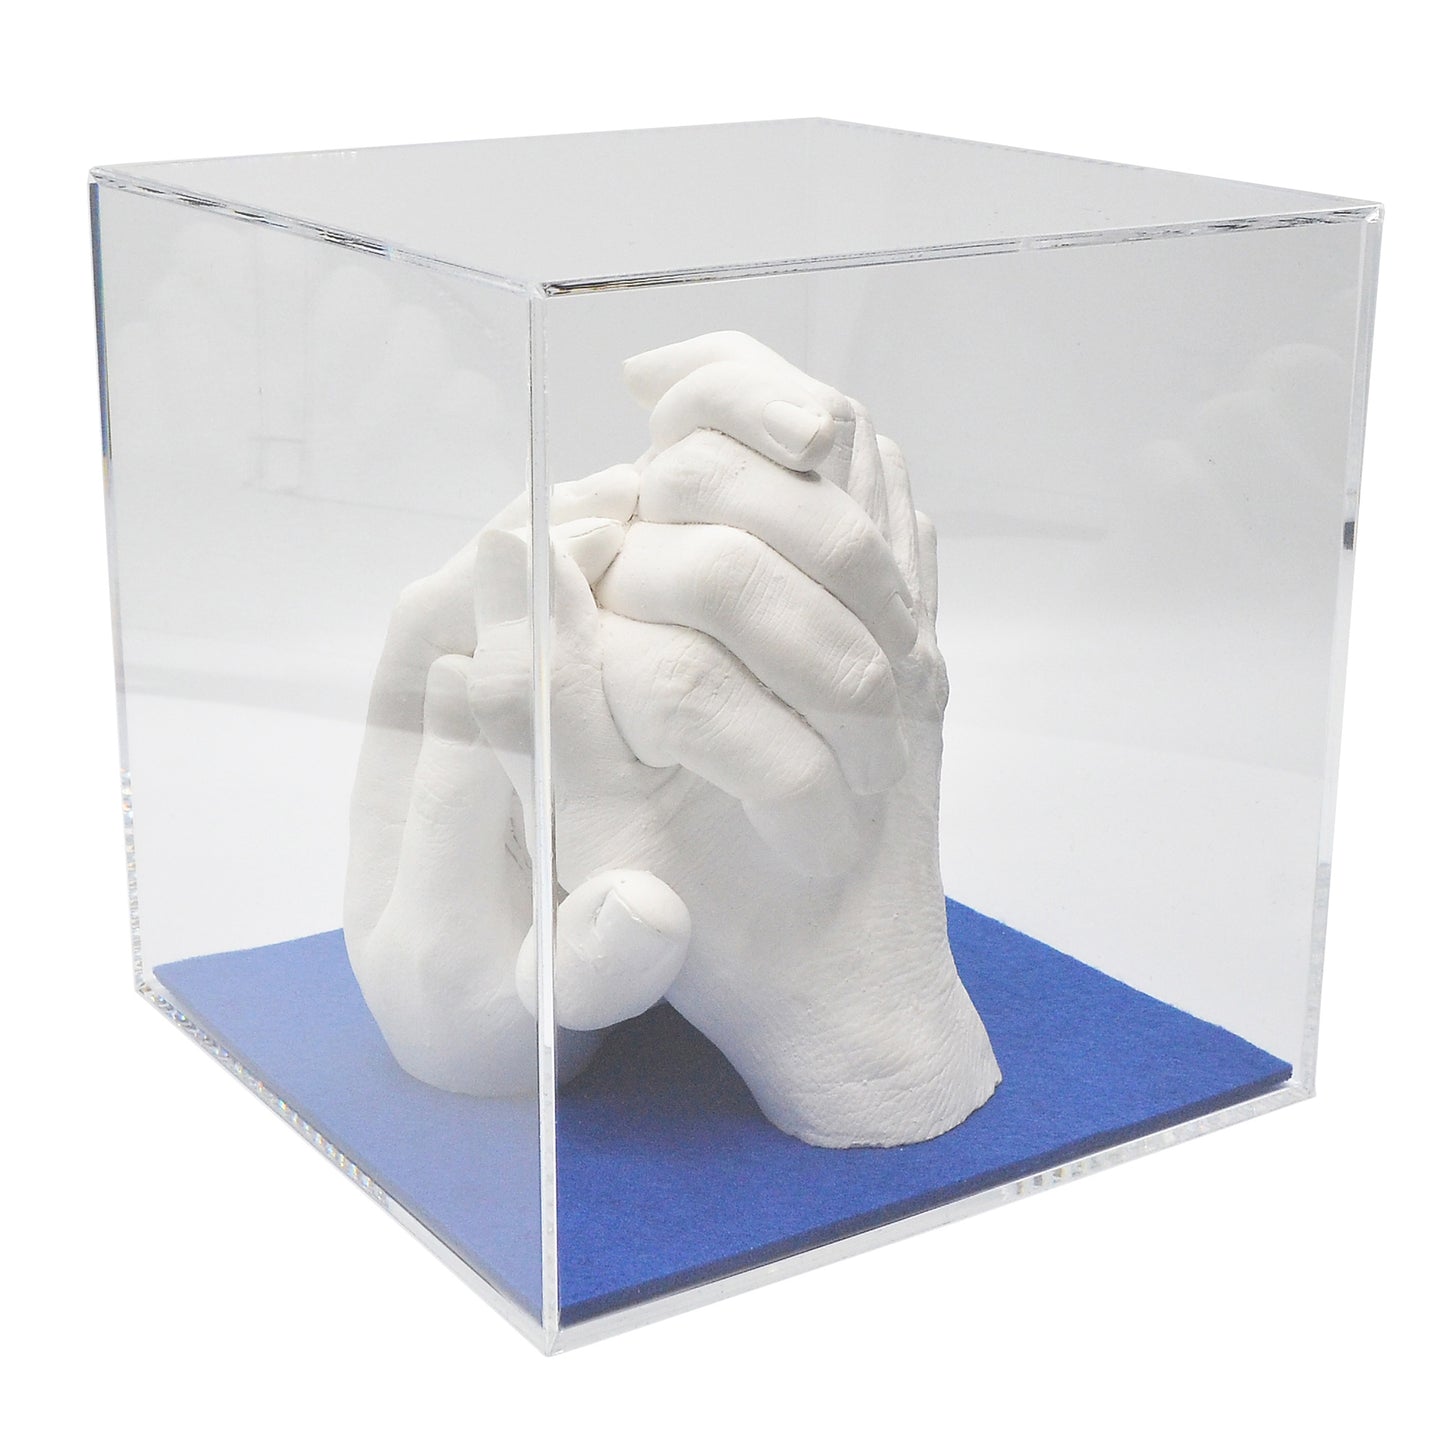 Abformsets "Family Hands" TRIO mit Acrylglaswürfel (20 x 20 x 20 cm)